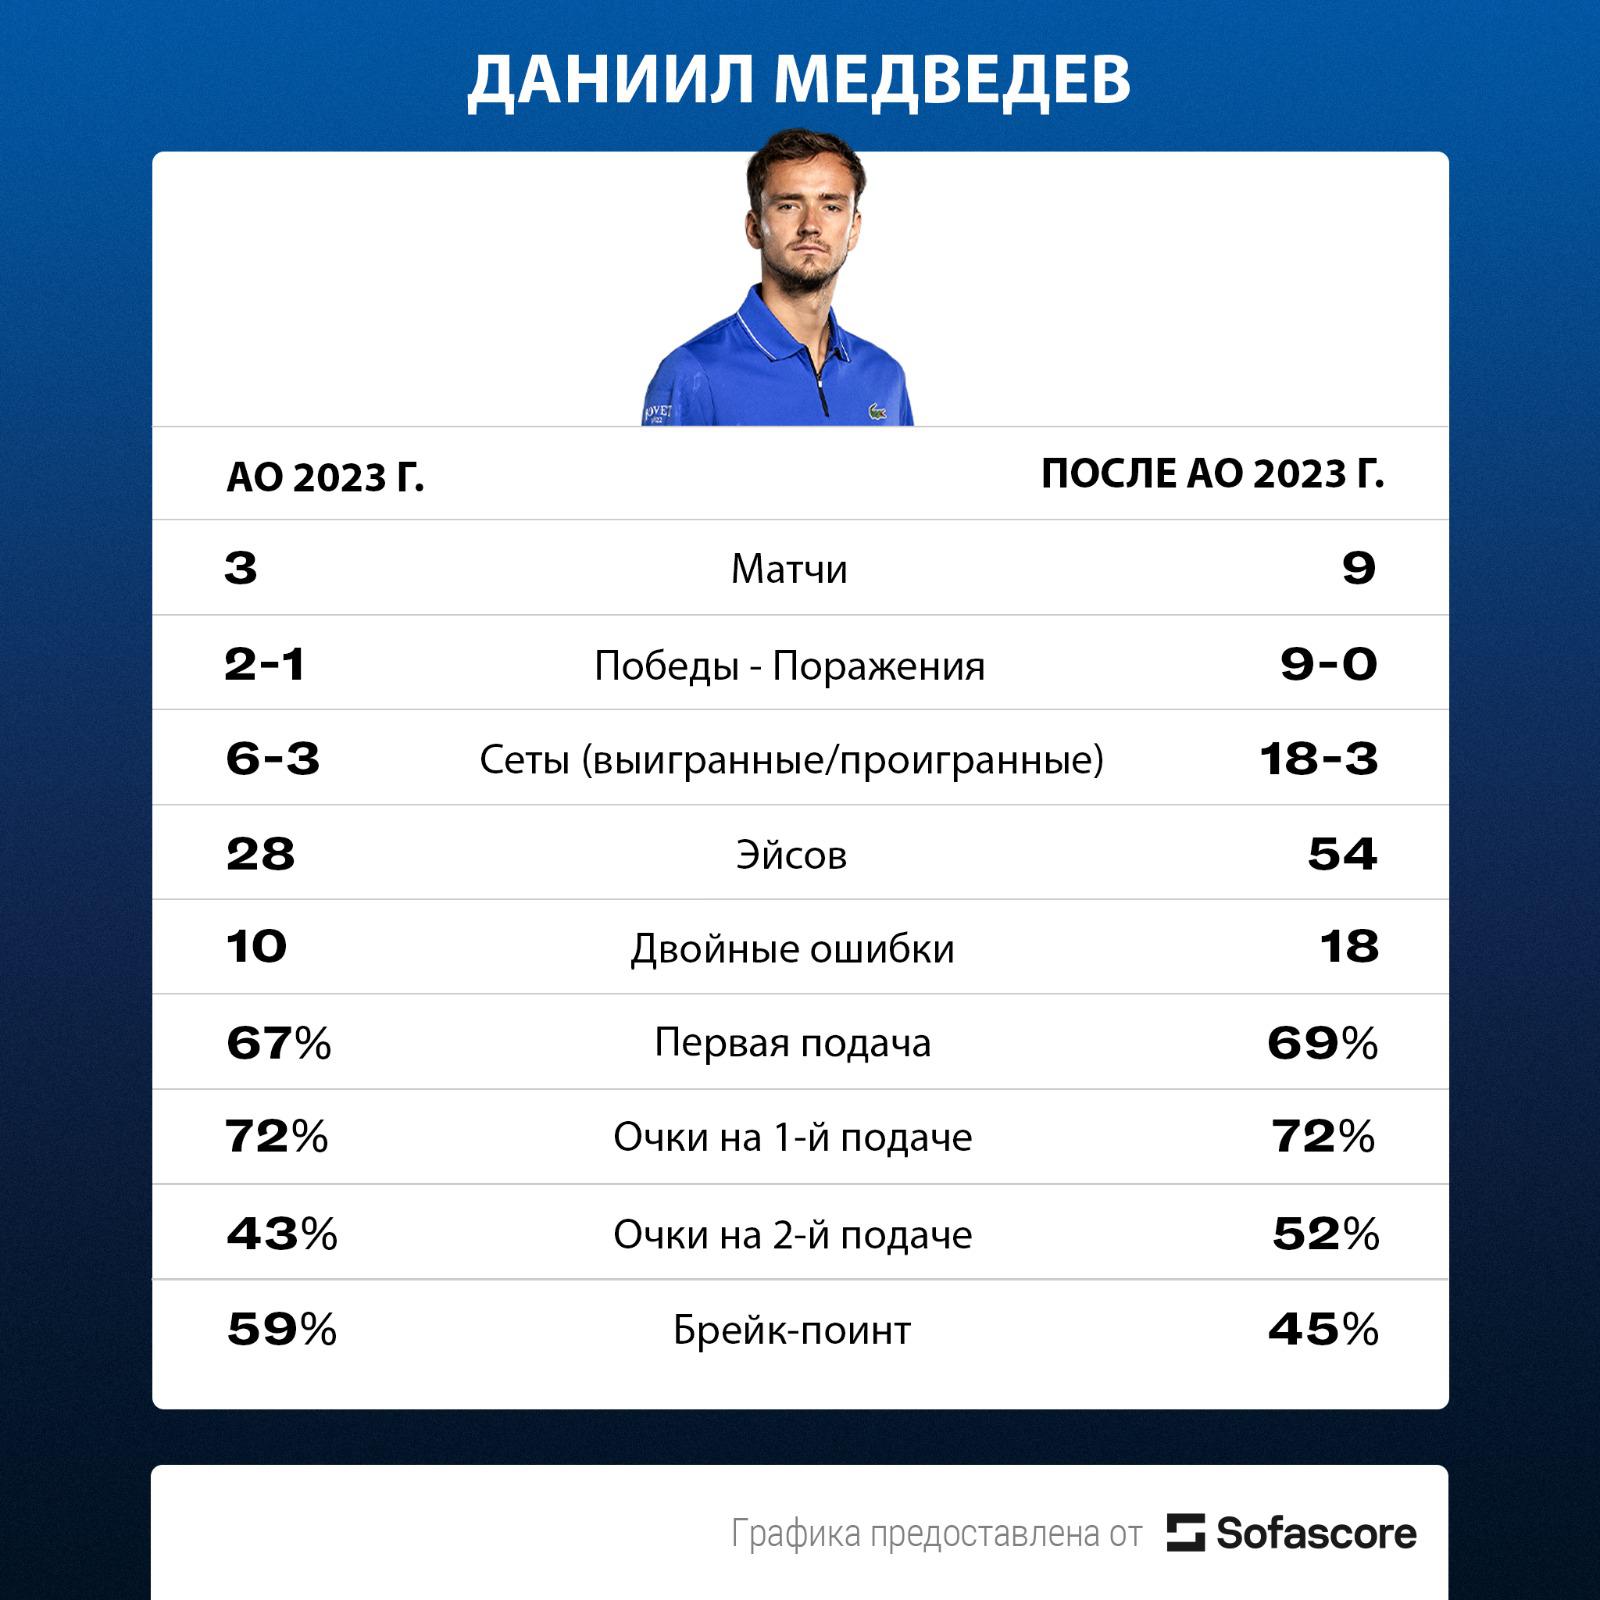 Медведев выиграл два турнира подряд. Можно ли считать это «возвращением»